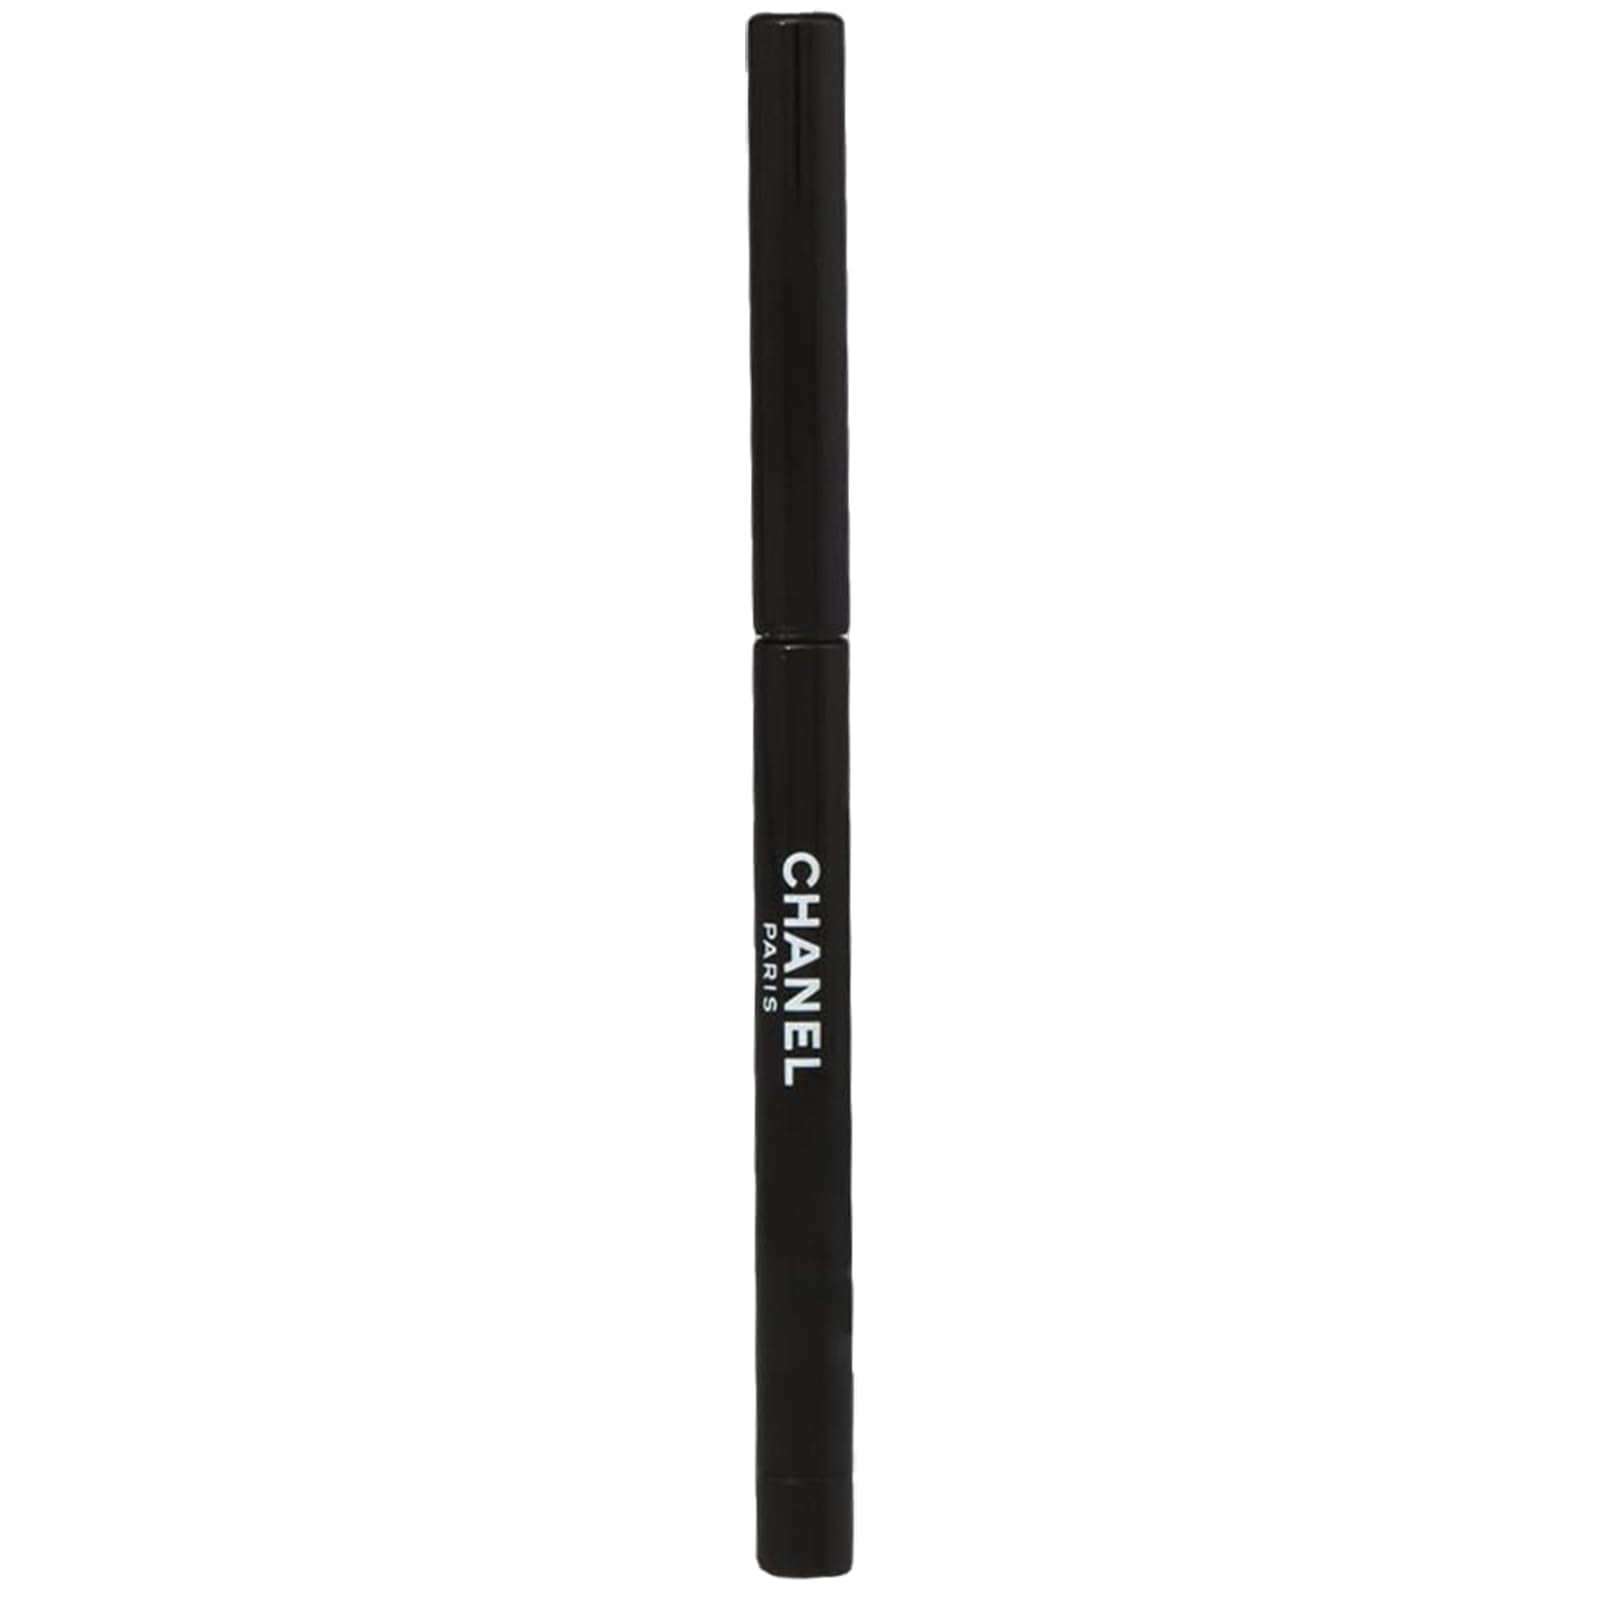 Chanel Waterproof eye pencil 88-Noir Intense